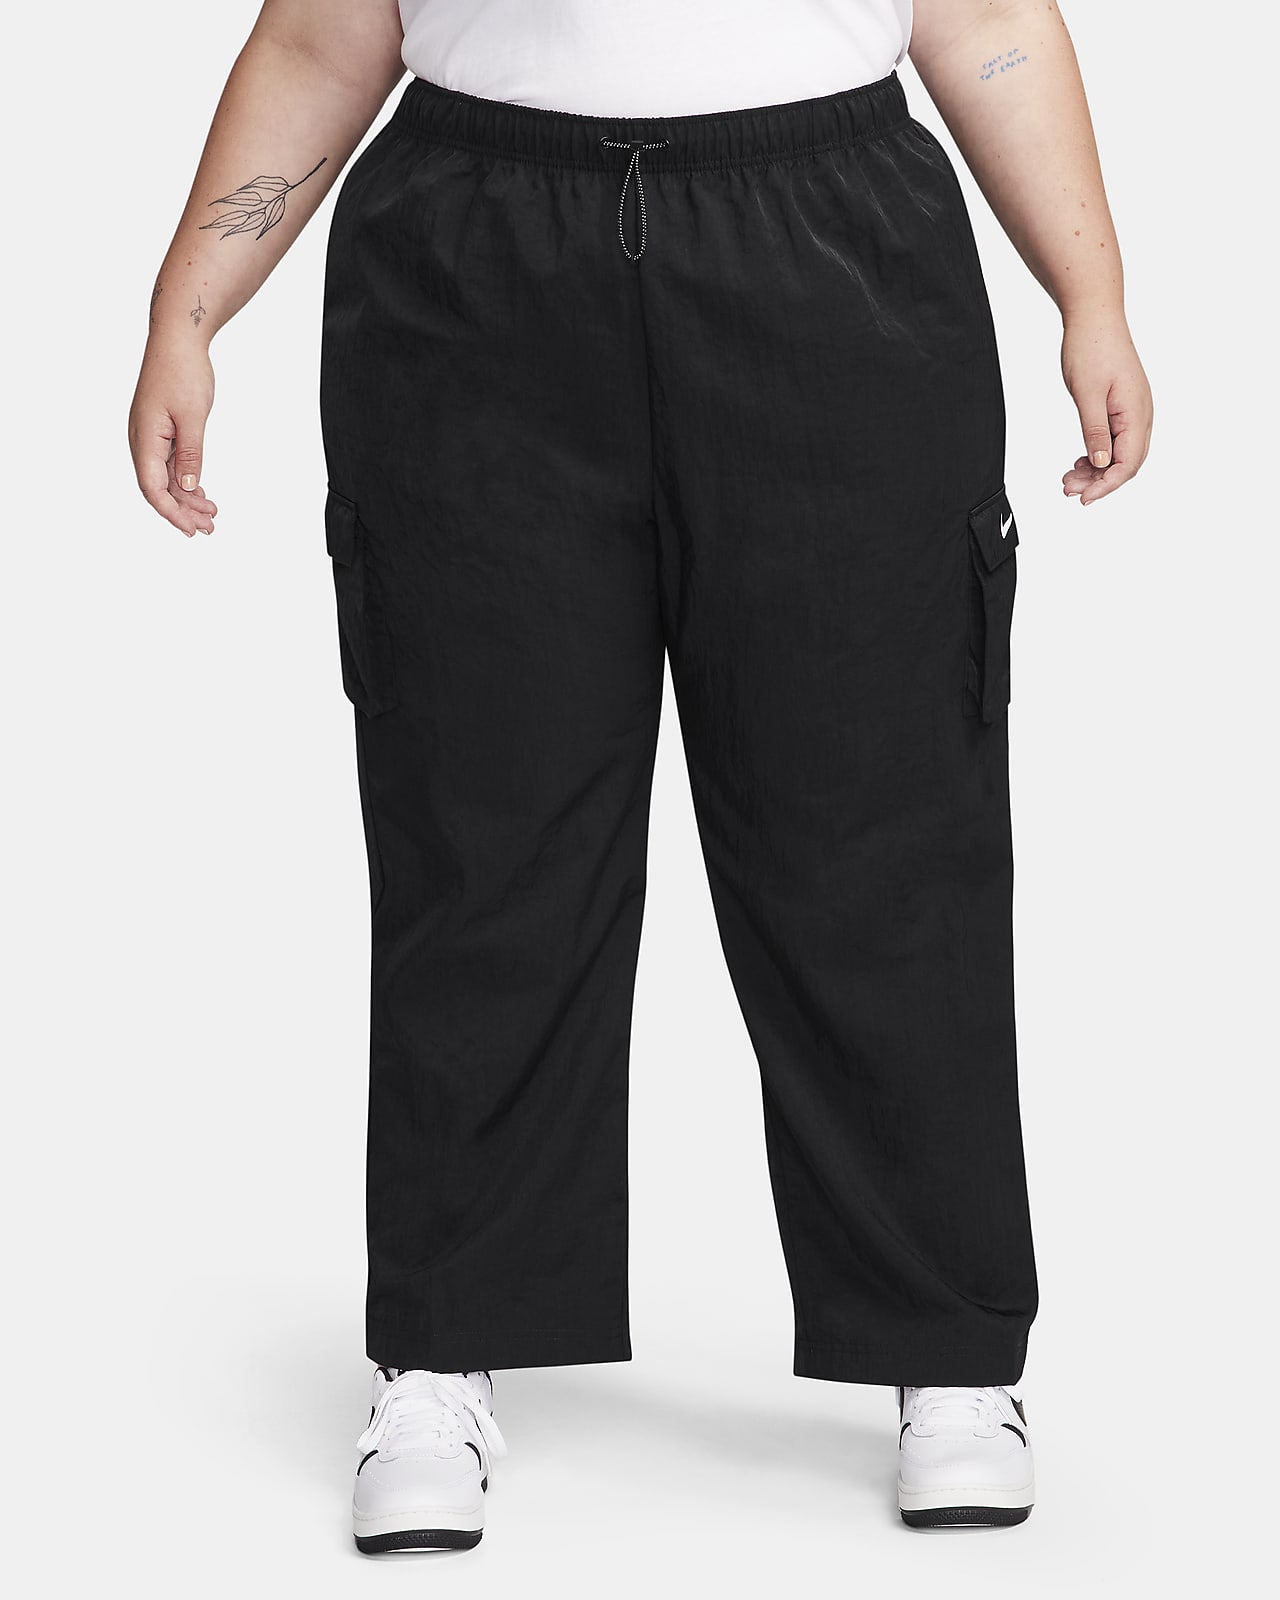 Γυναικείο ψηλόμεσο υφαντό παντελόνι cargo Nike Sportswear Essential (μεγάλα μεγέθη)